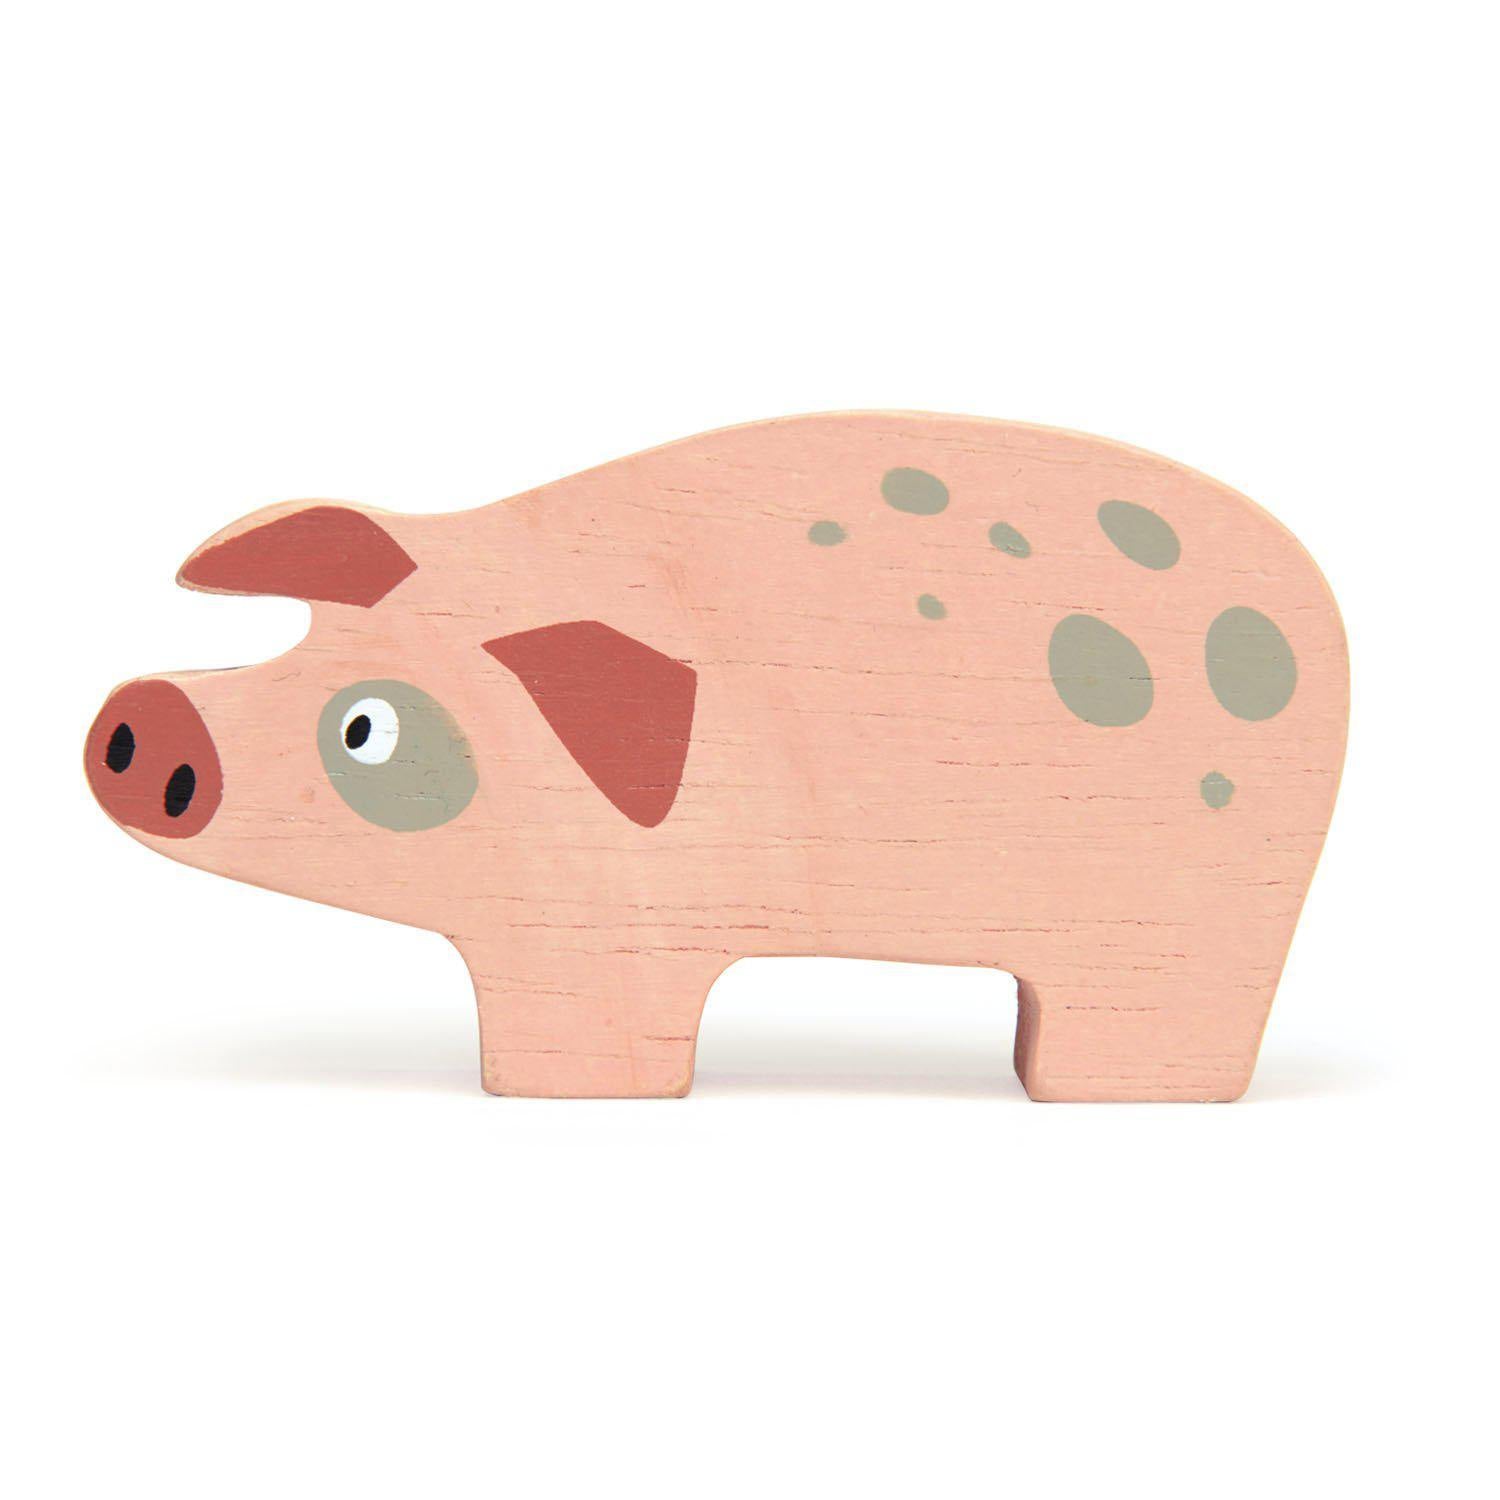 Malacka, prémium minőségű fából - Pig - Tender Leaf Toys-Tender Leaf Toys-1-Játszma.ro - A maradandó élmények boltja